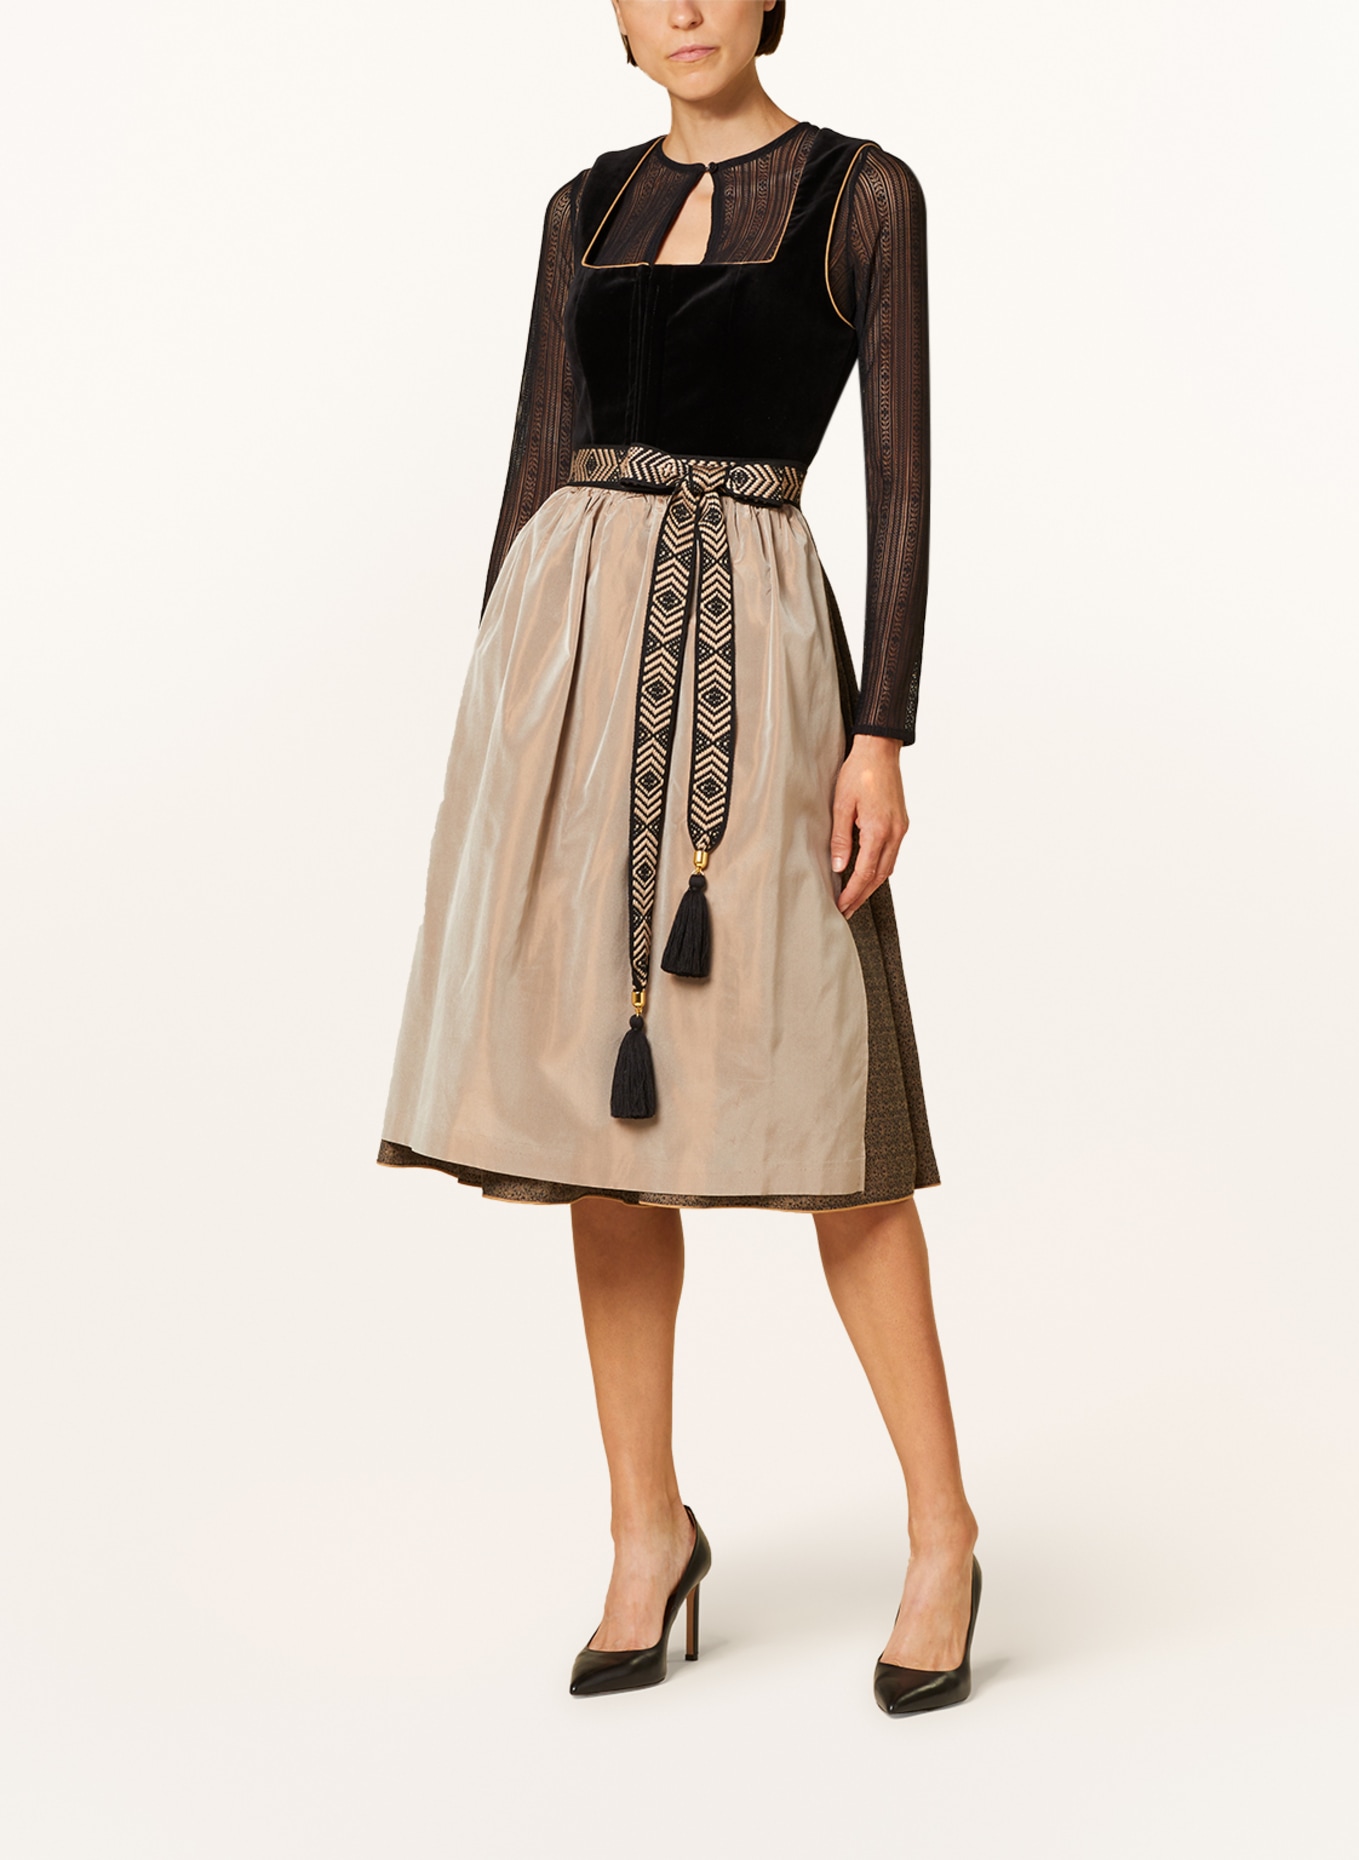 Hammerschmid Dirndl blouse made of lace, Color: BLACK (Image 4)